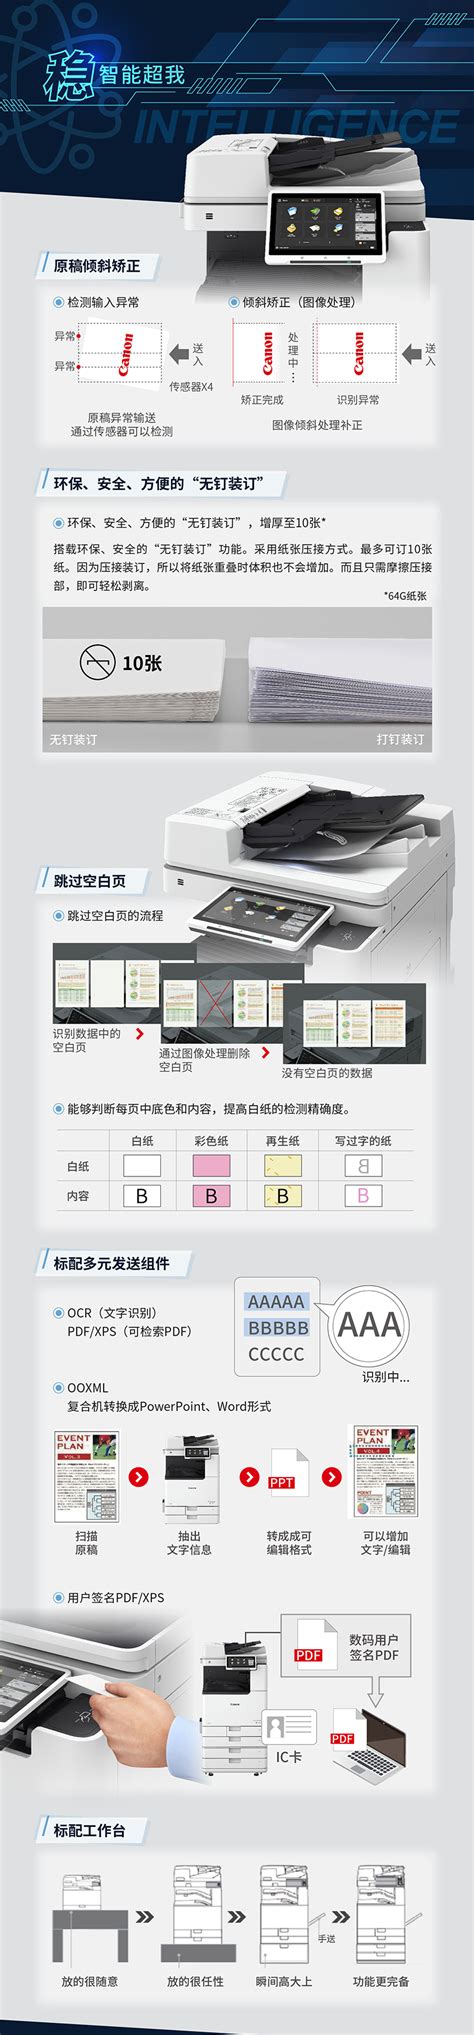 iR-ADV DX C3835-上海松江区复印机租赁|佳能日佳维修站|刷卡，指纹，人脸识别认证打印管理软件